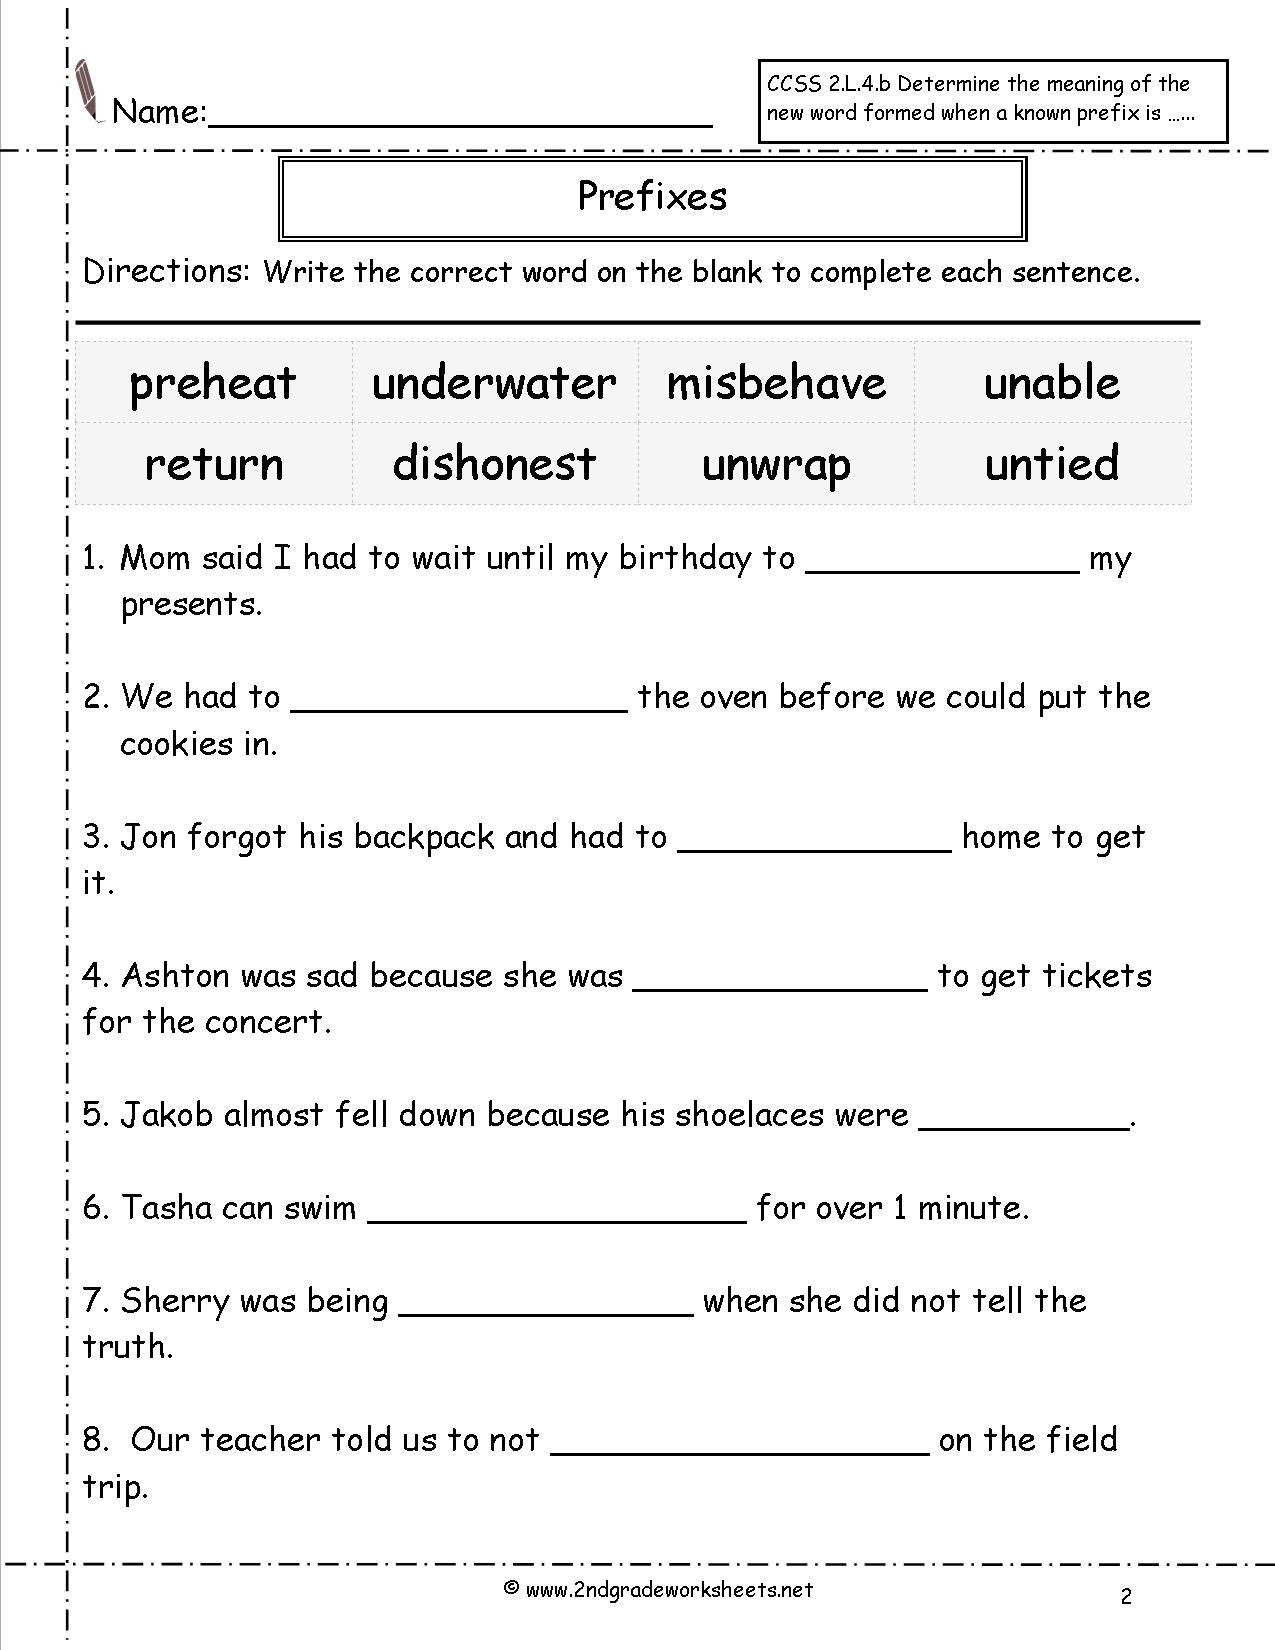 Prefixes Worksheets 4th Grade Second Grade Prefixes Worksheets